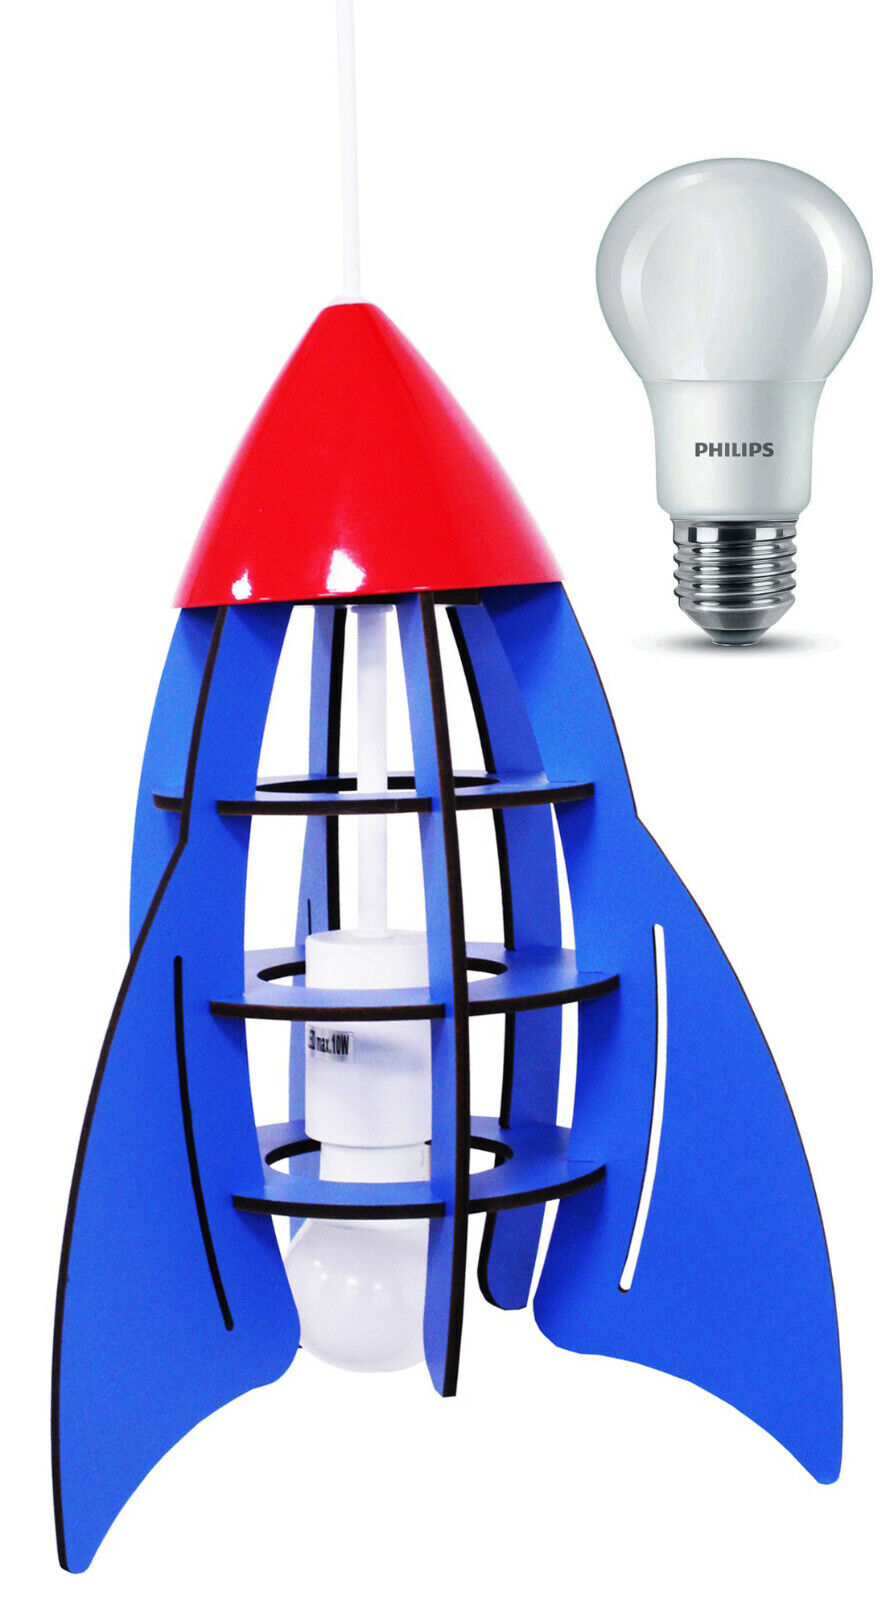 INSATECH LED Hängeleuchte Rakete blau MDF 1x E27 inkl Philips LED Lampe 6,5 Watt, warmweiß extra mit Lichtmenge 470 Lumen